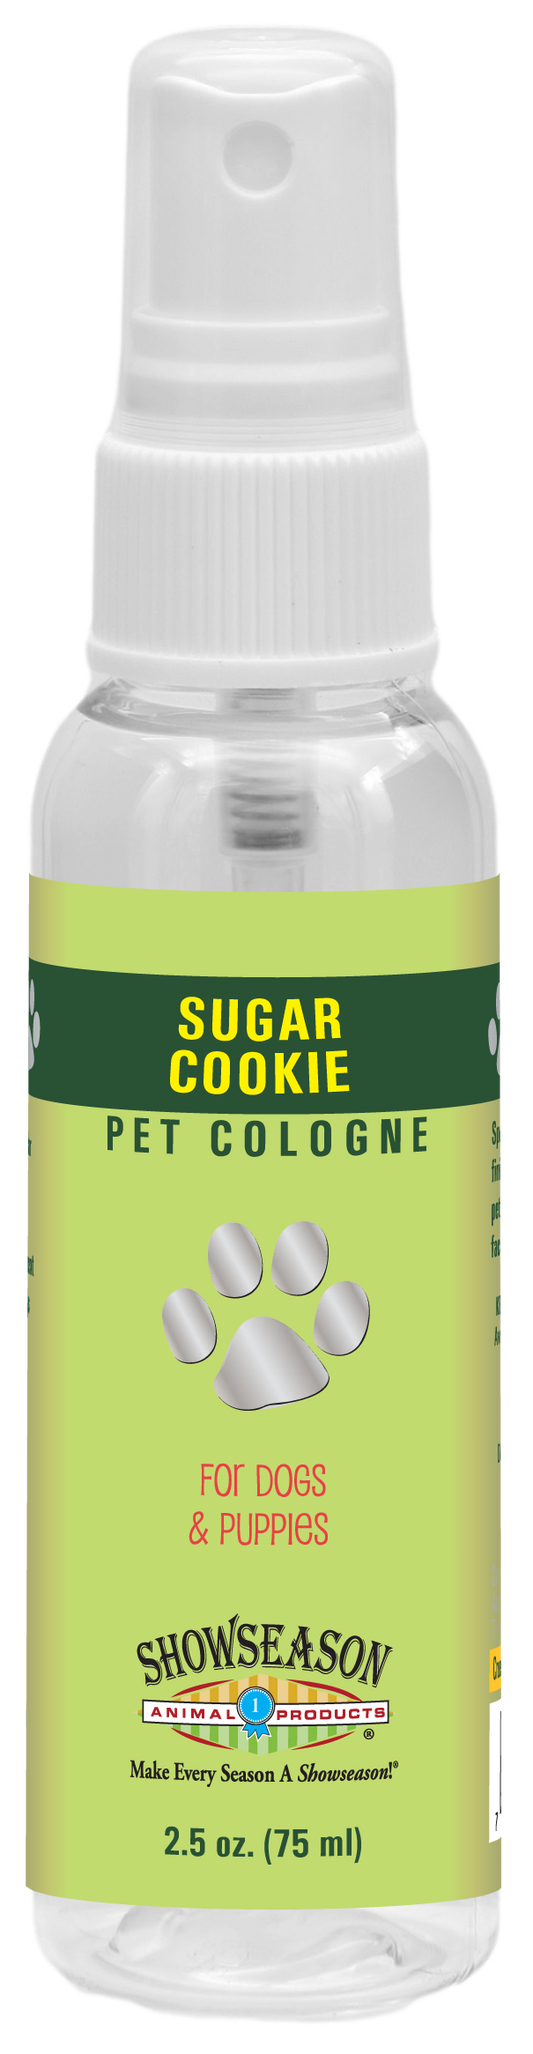 Sugar Cookie Pet Cologne | Showseason®